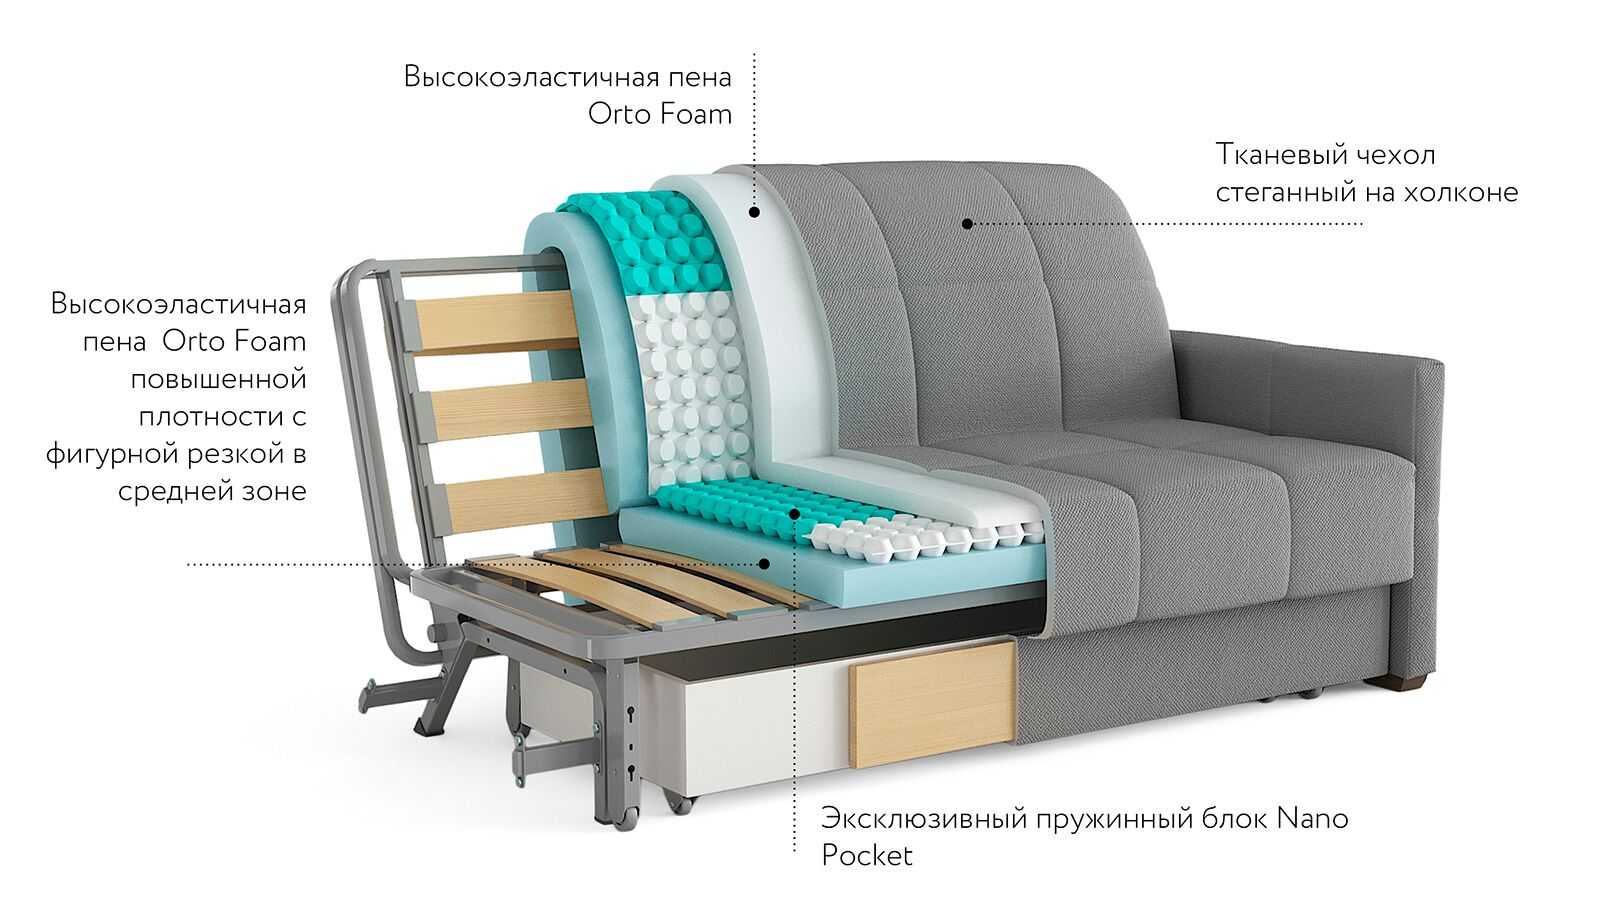 Как выбрать лучший диван с ортопедическим матрасом для ежедневного сна